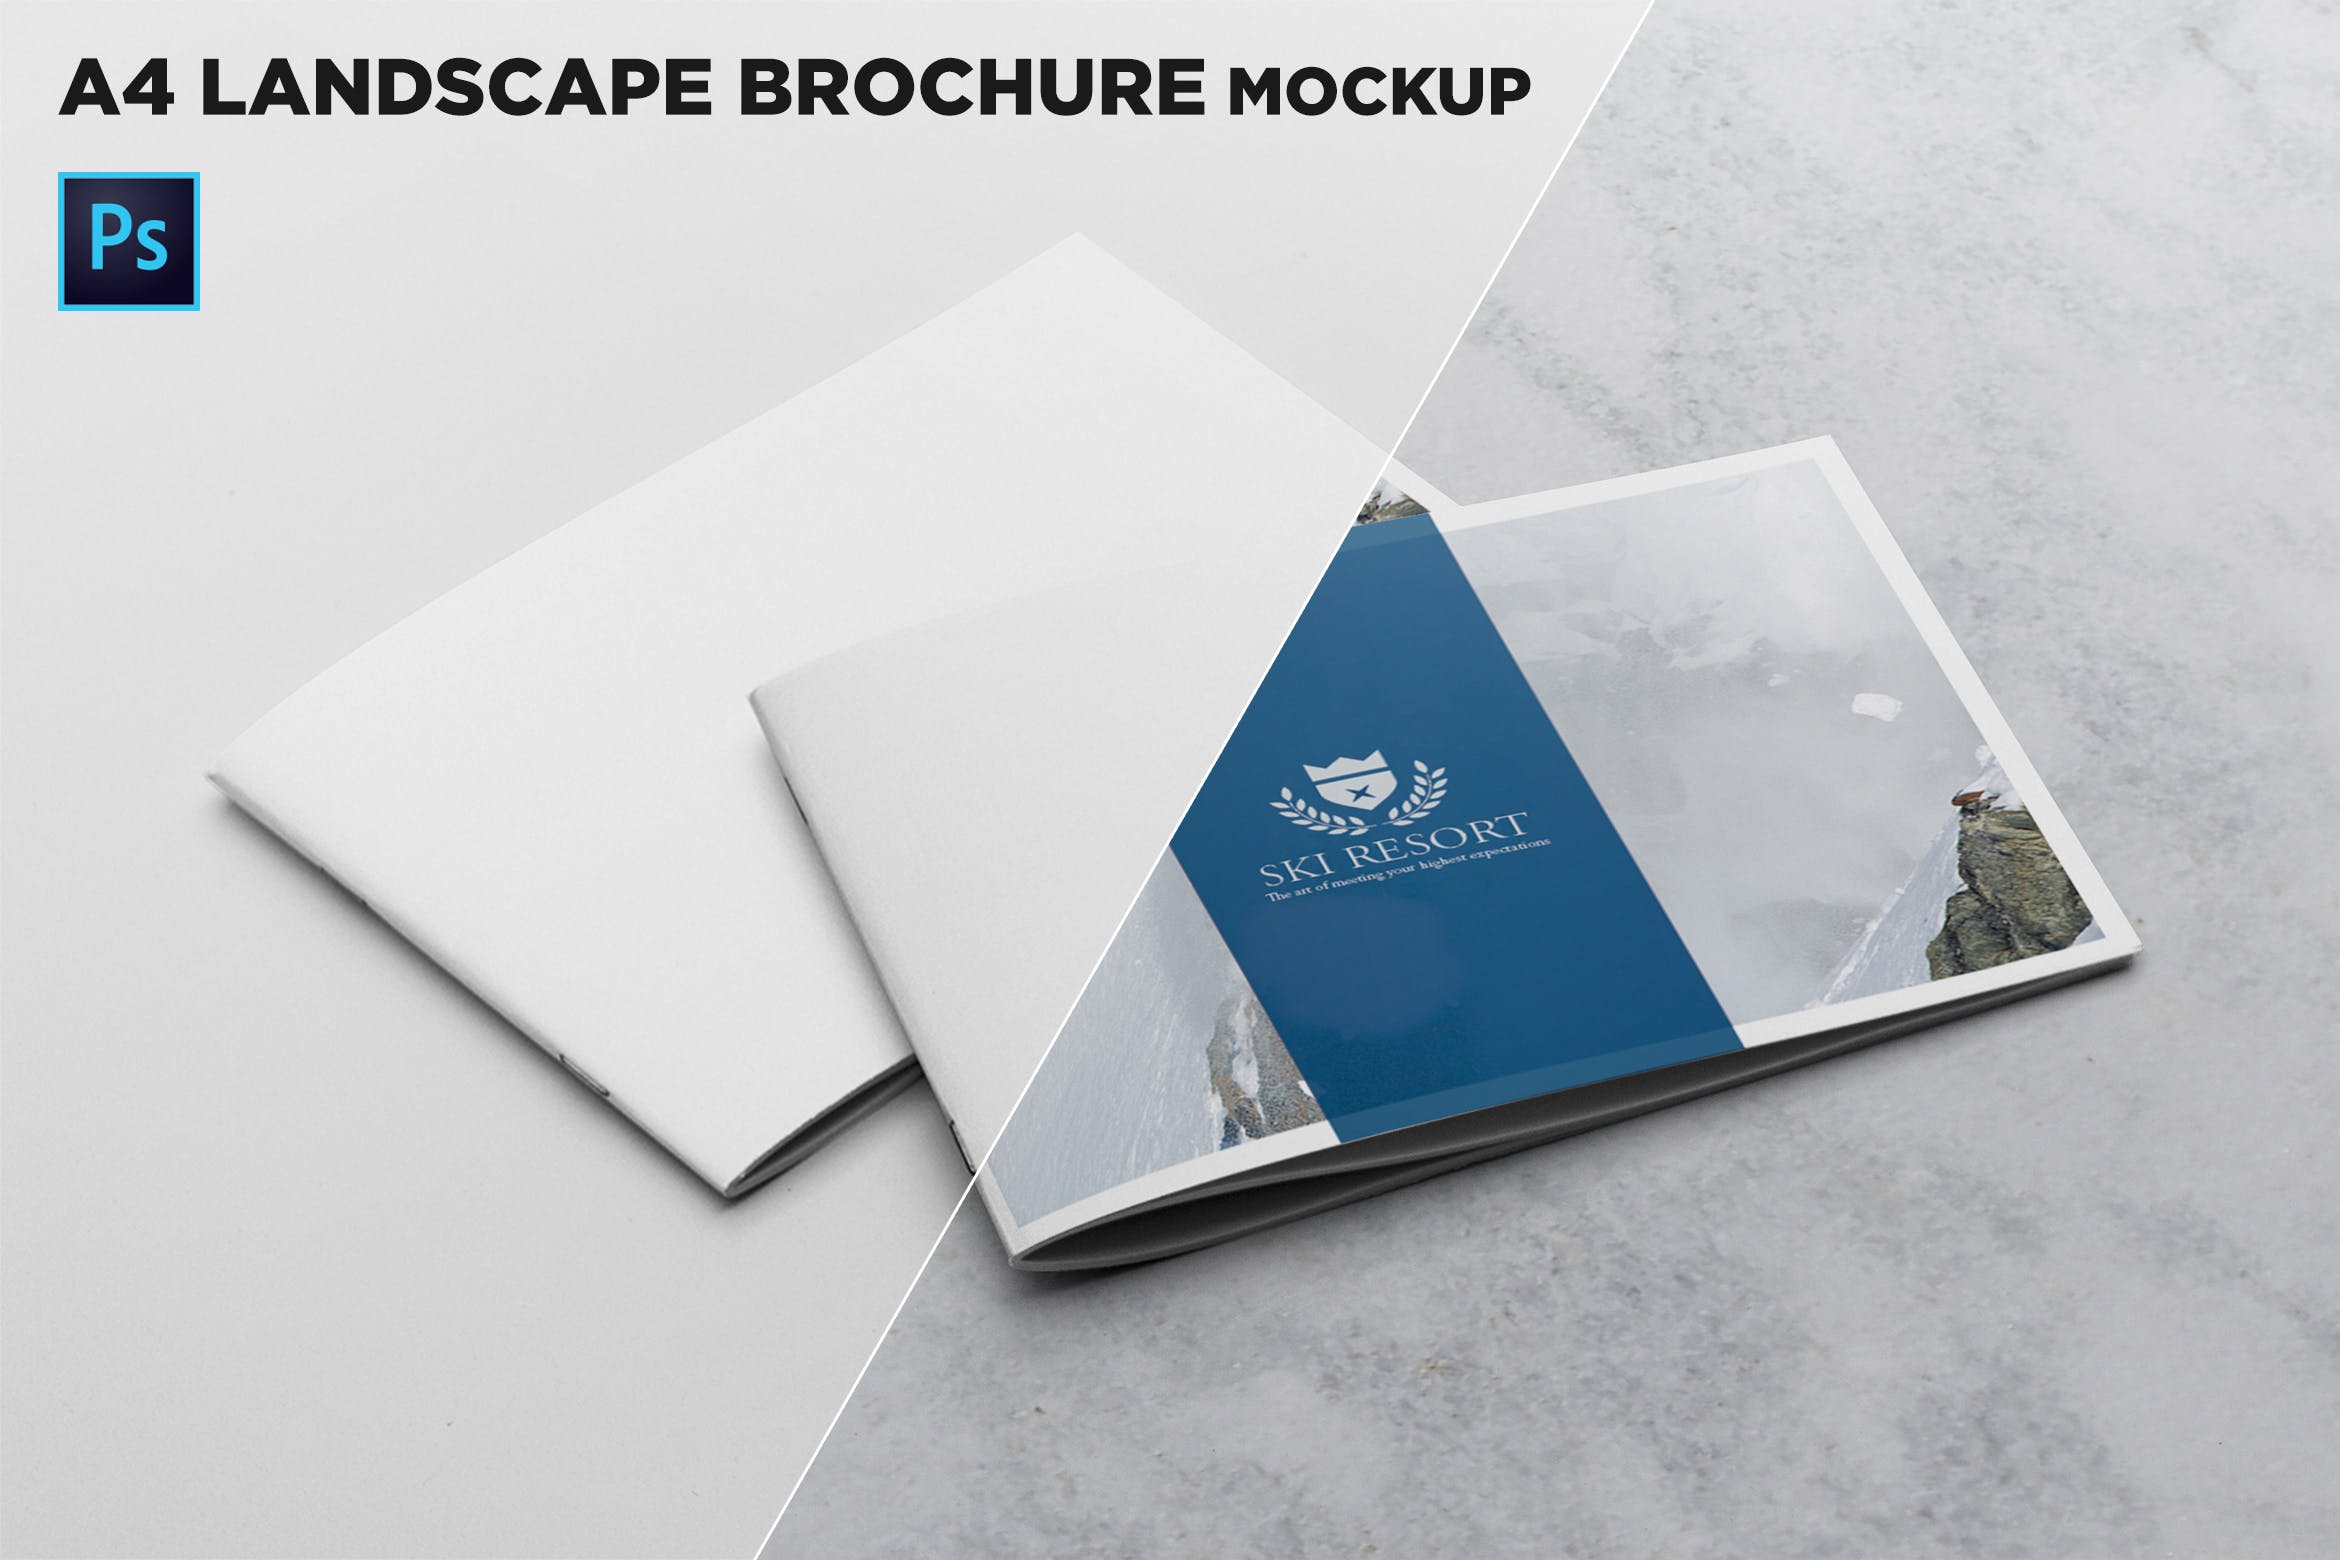 宣传画册/企业画册叠放效果图样机素材库精选模板 2 Covers Landscape Brochure Mockup插图